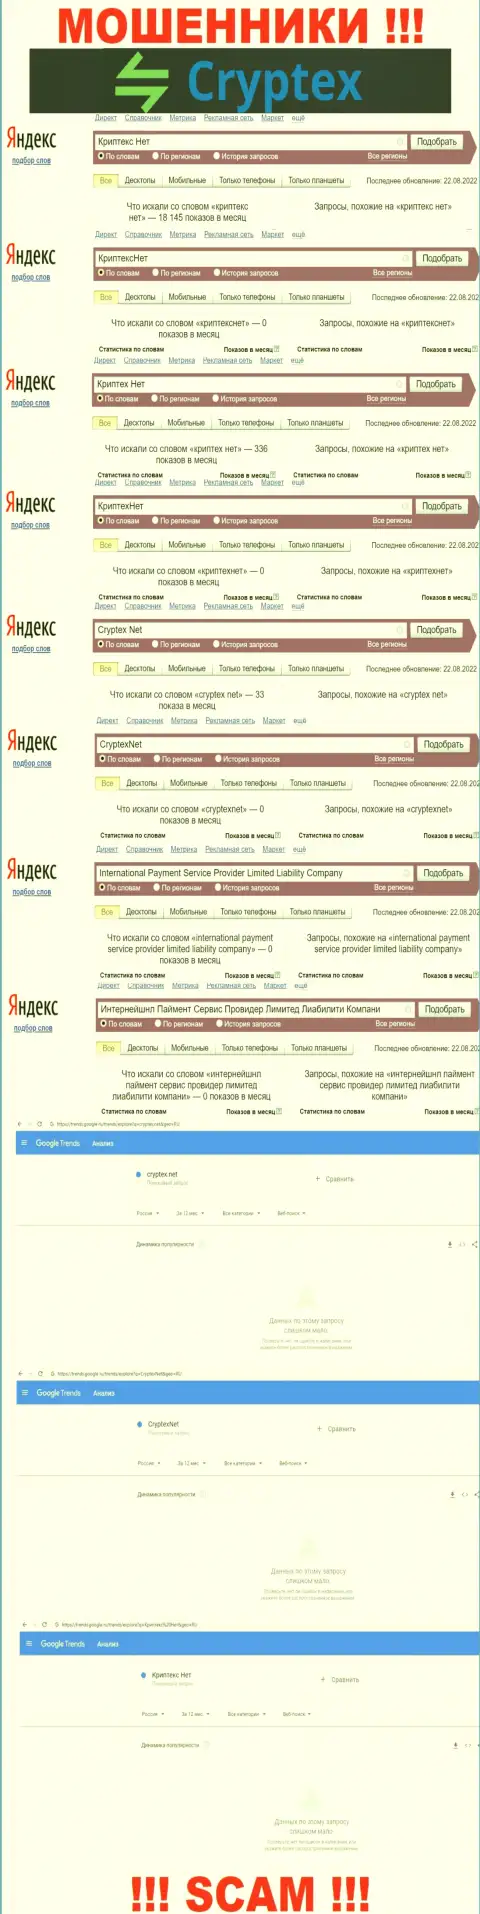 Скрин результатов поисковых запросов по жульнической компании Криптекс Нет